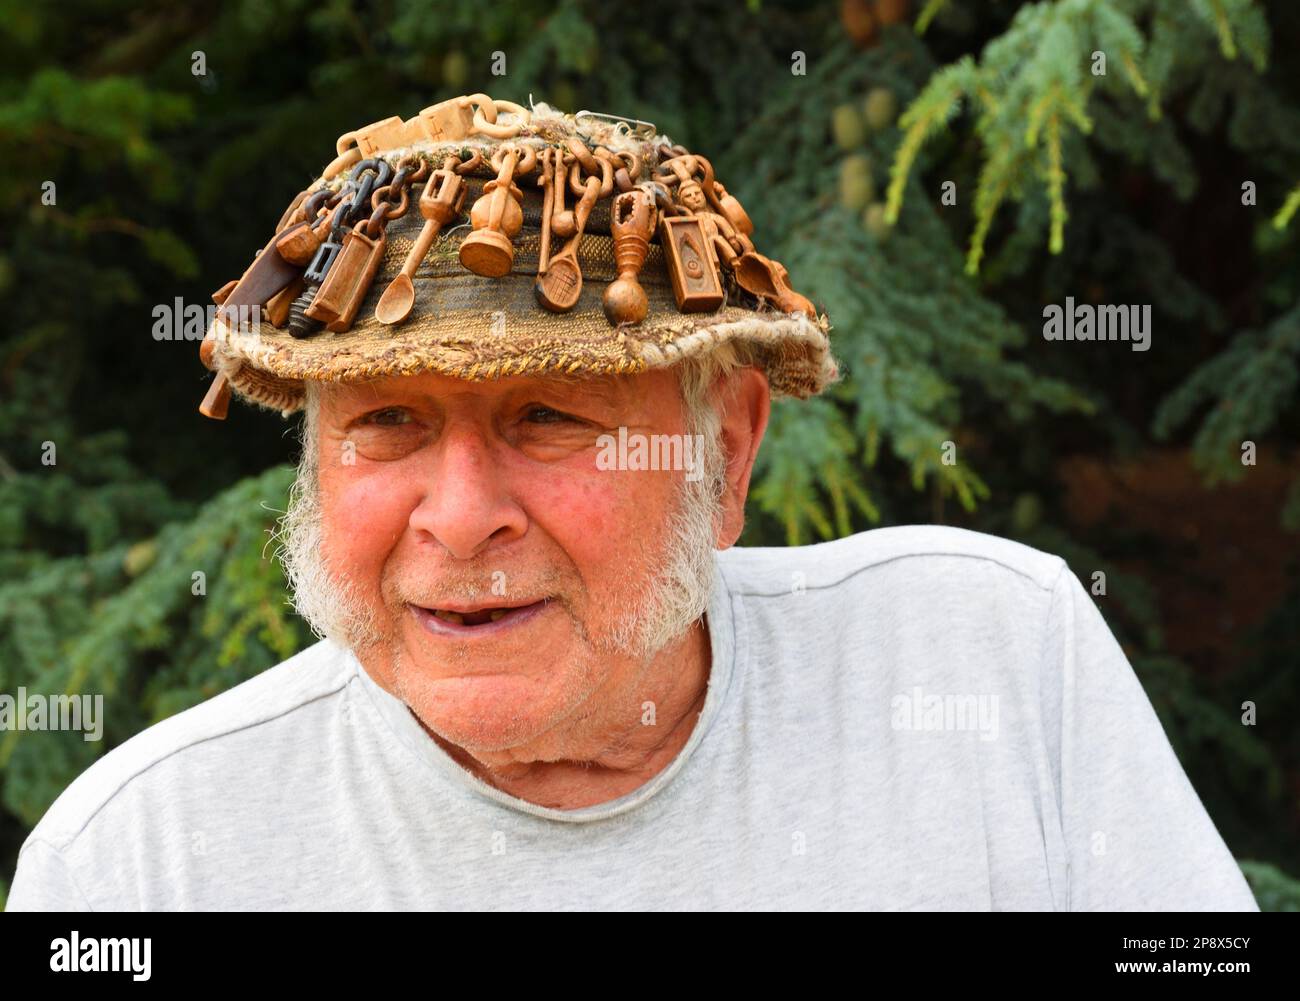 OXBOROUGH, NORFOLK, ENGLAND - 12. JULI 2022: Älterer Mann mit Hut, der mit geschnitzten Liebeslöffeln aus Holz bedeckt ist. Stockfoto